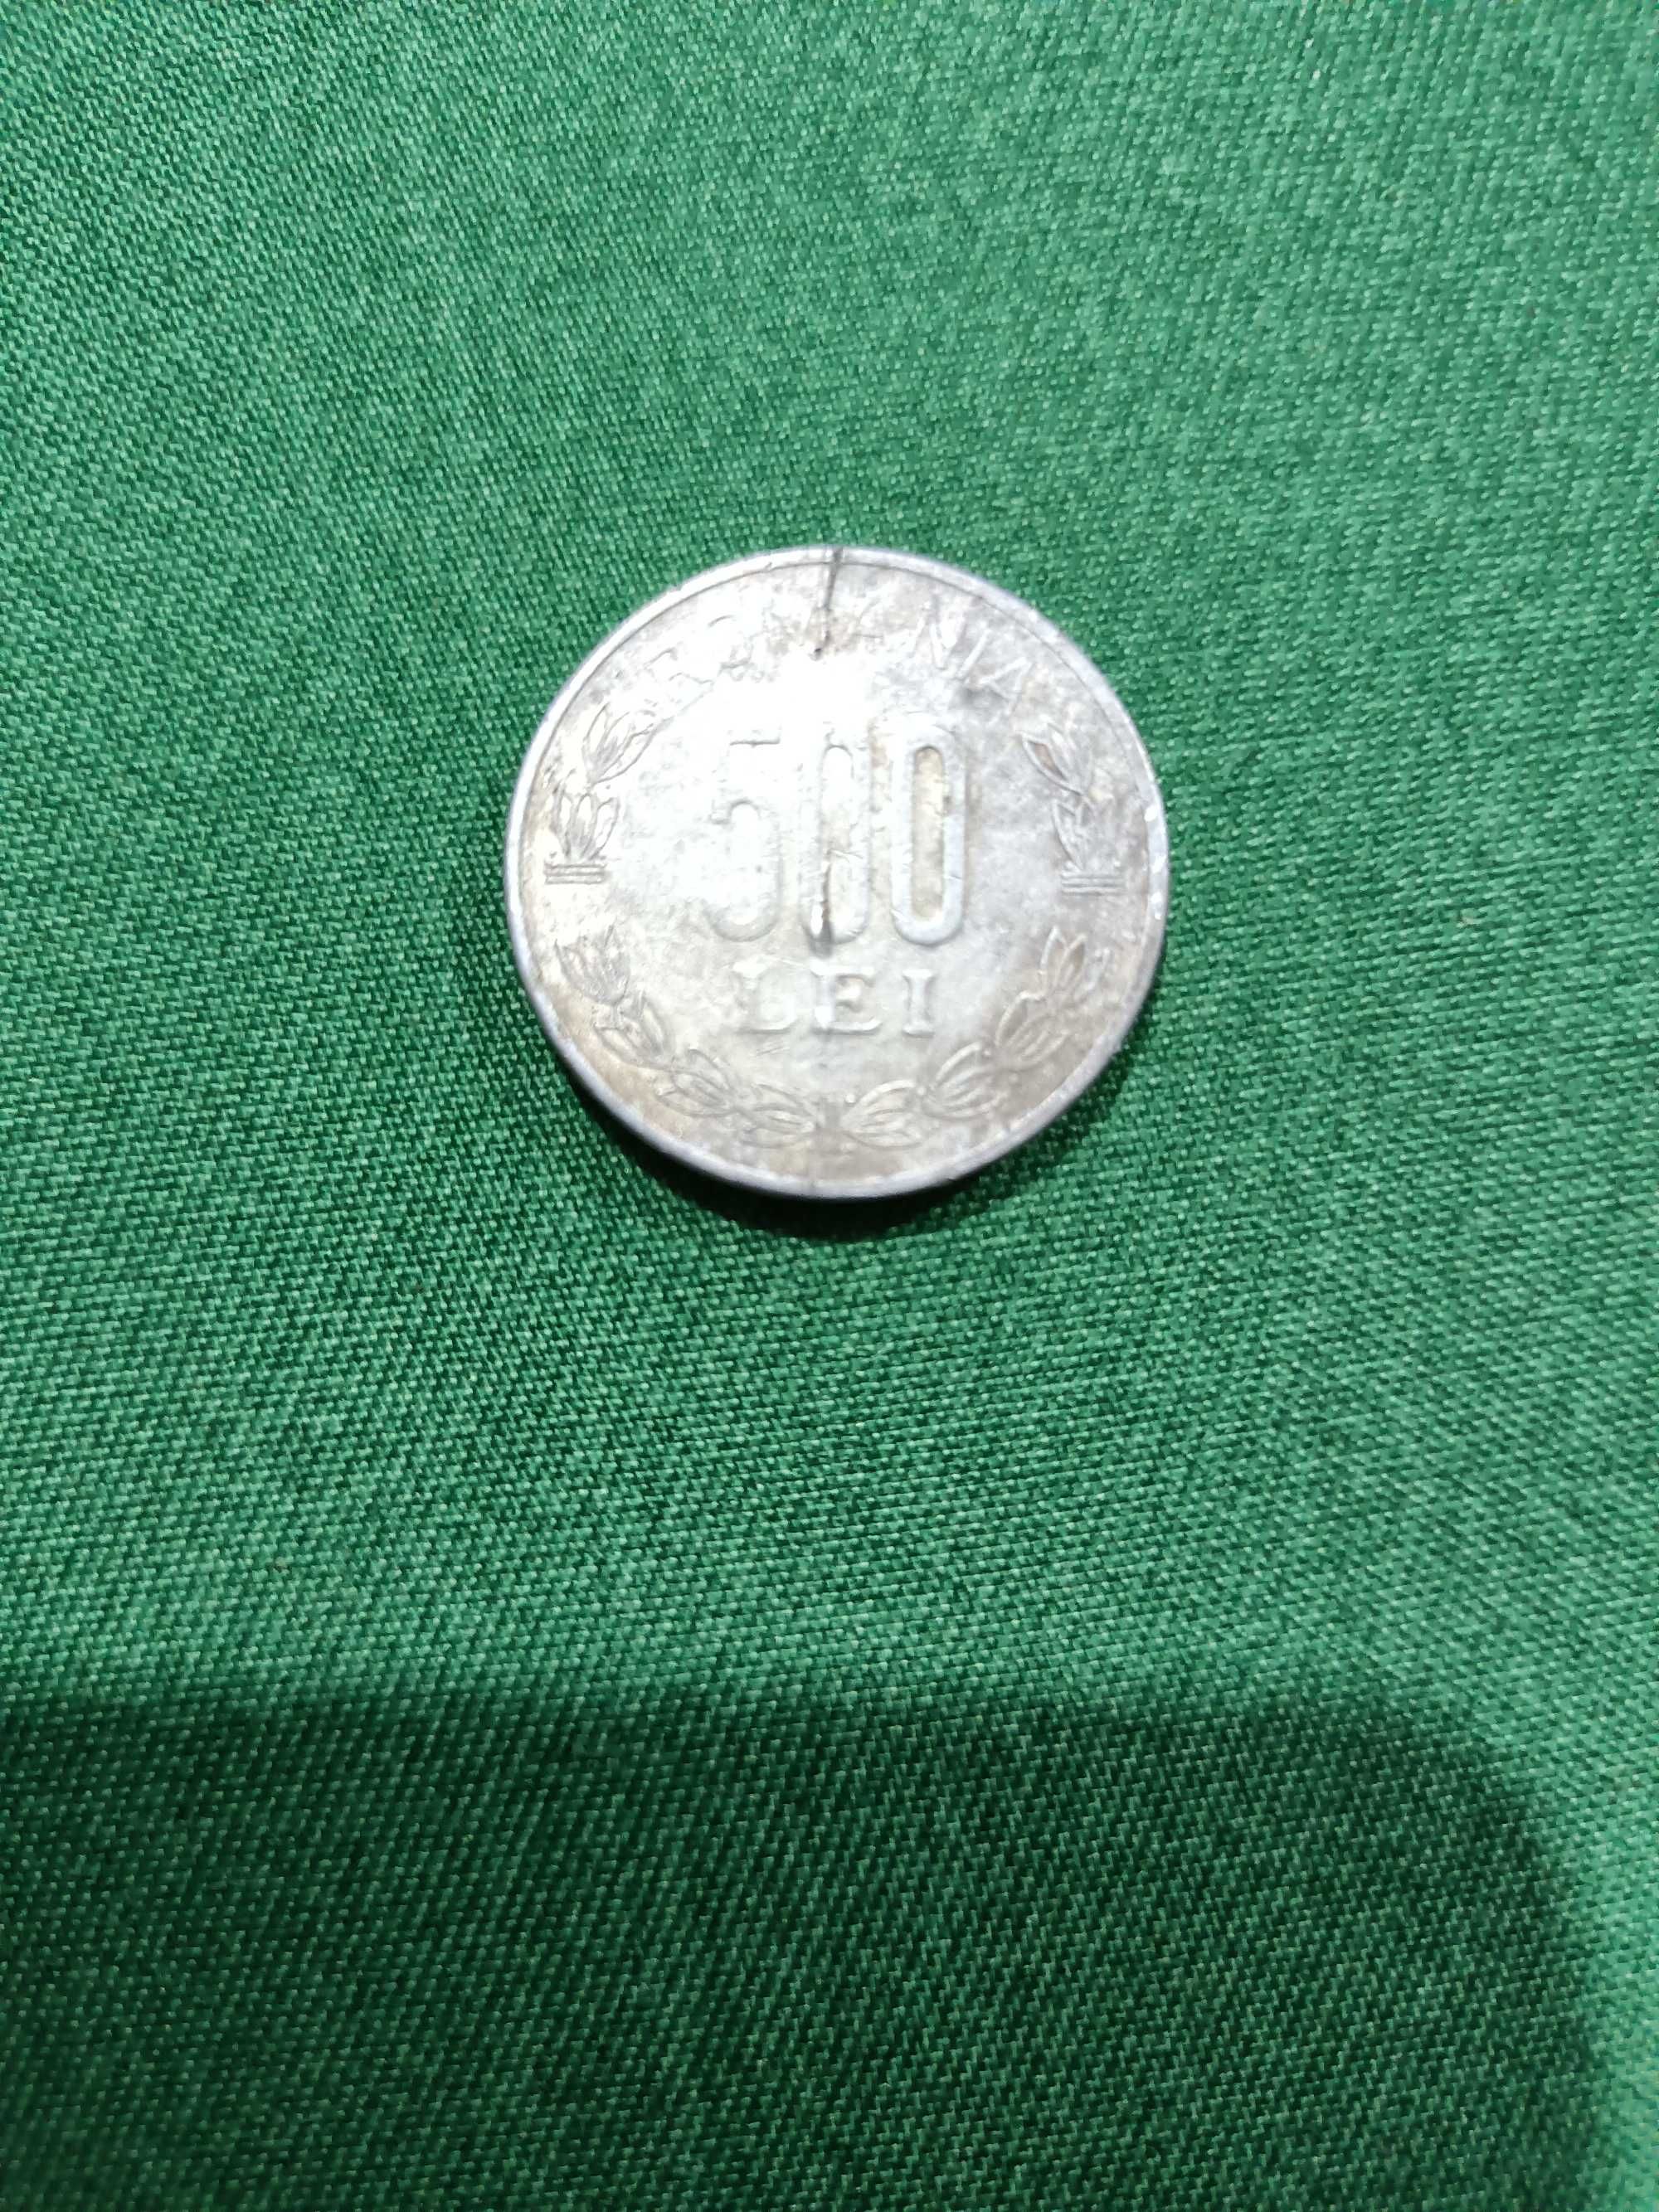 Monedă 500 de lei veche din anul 2000